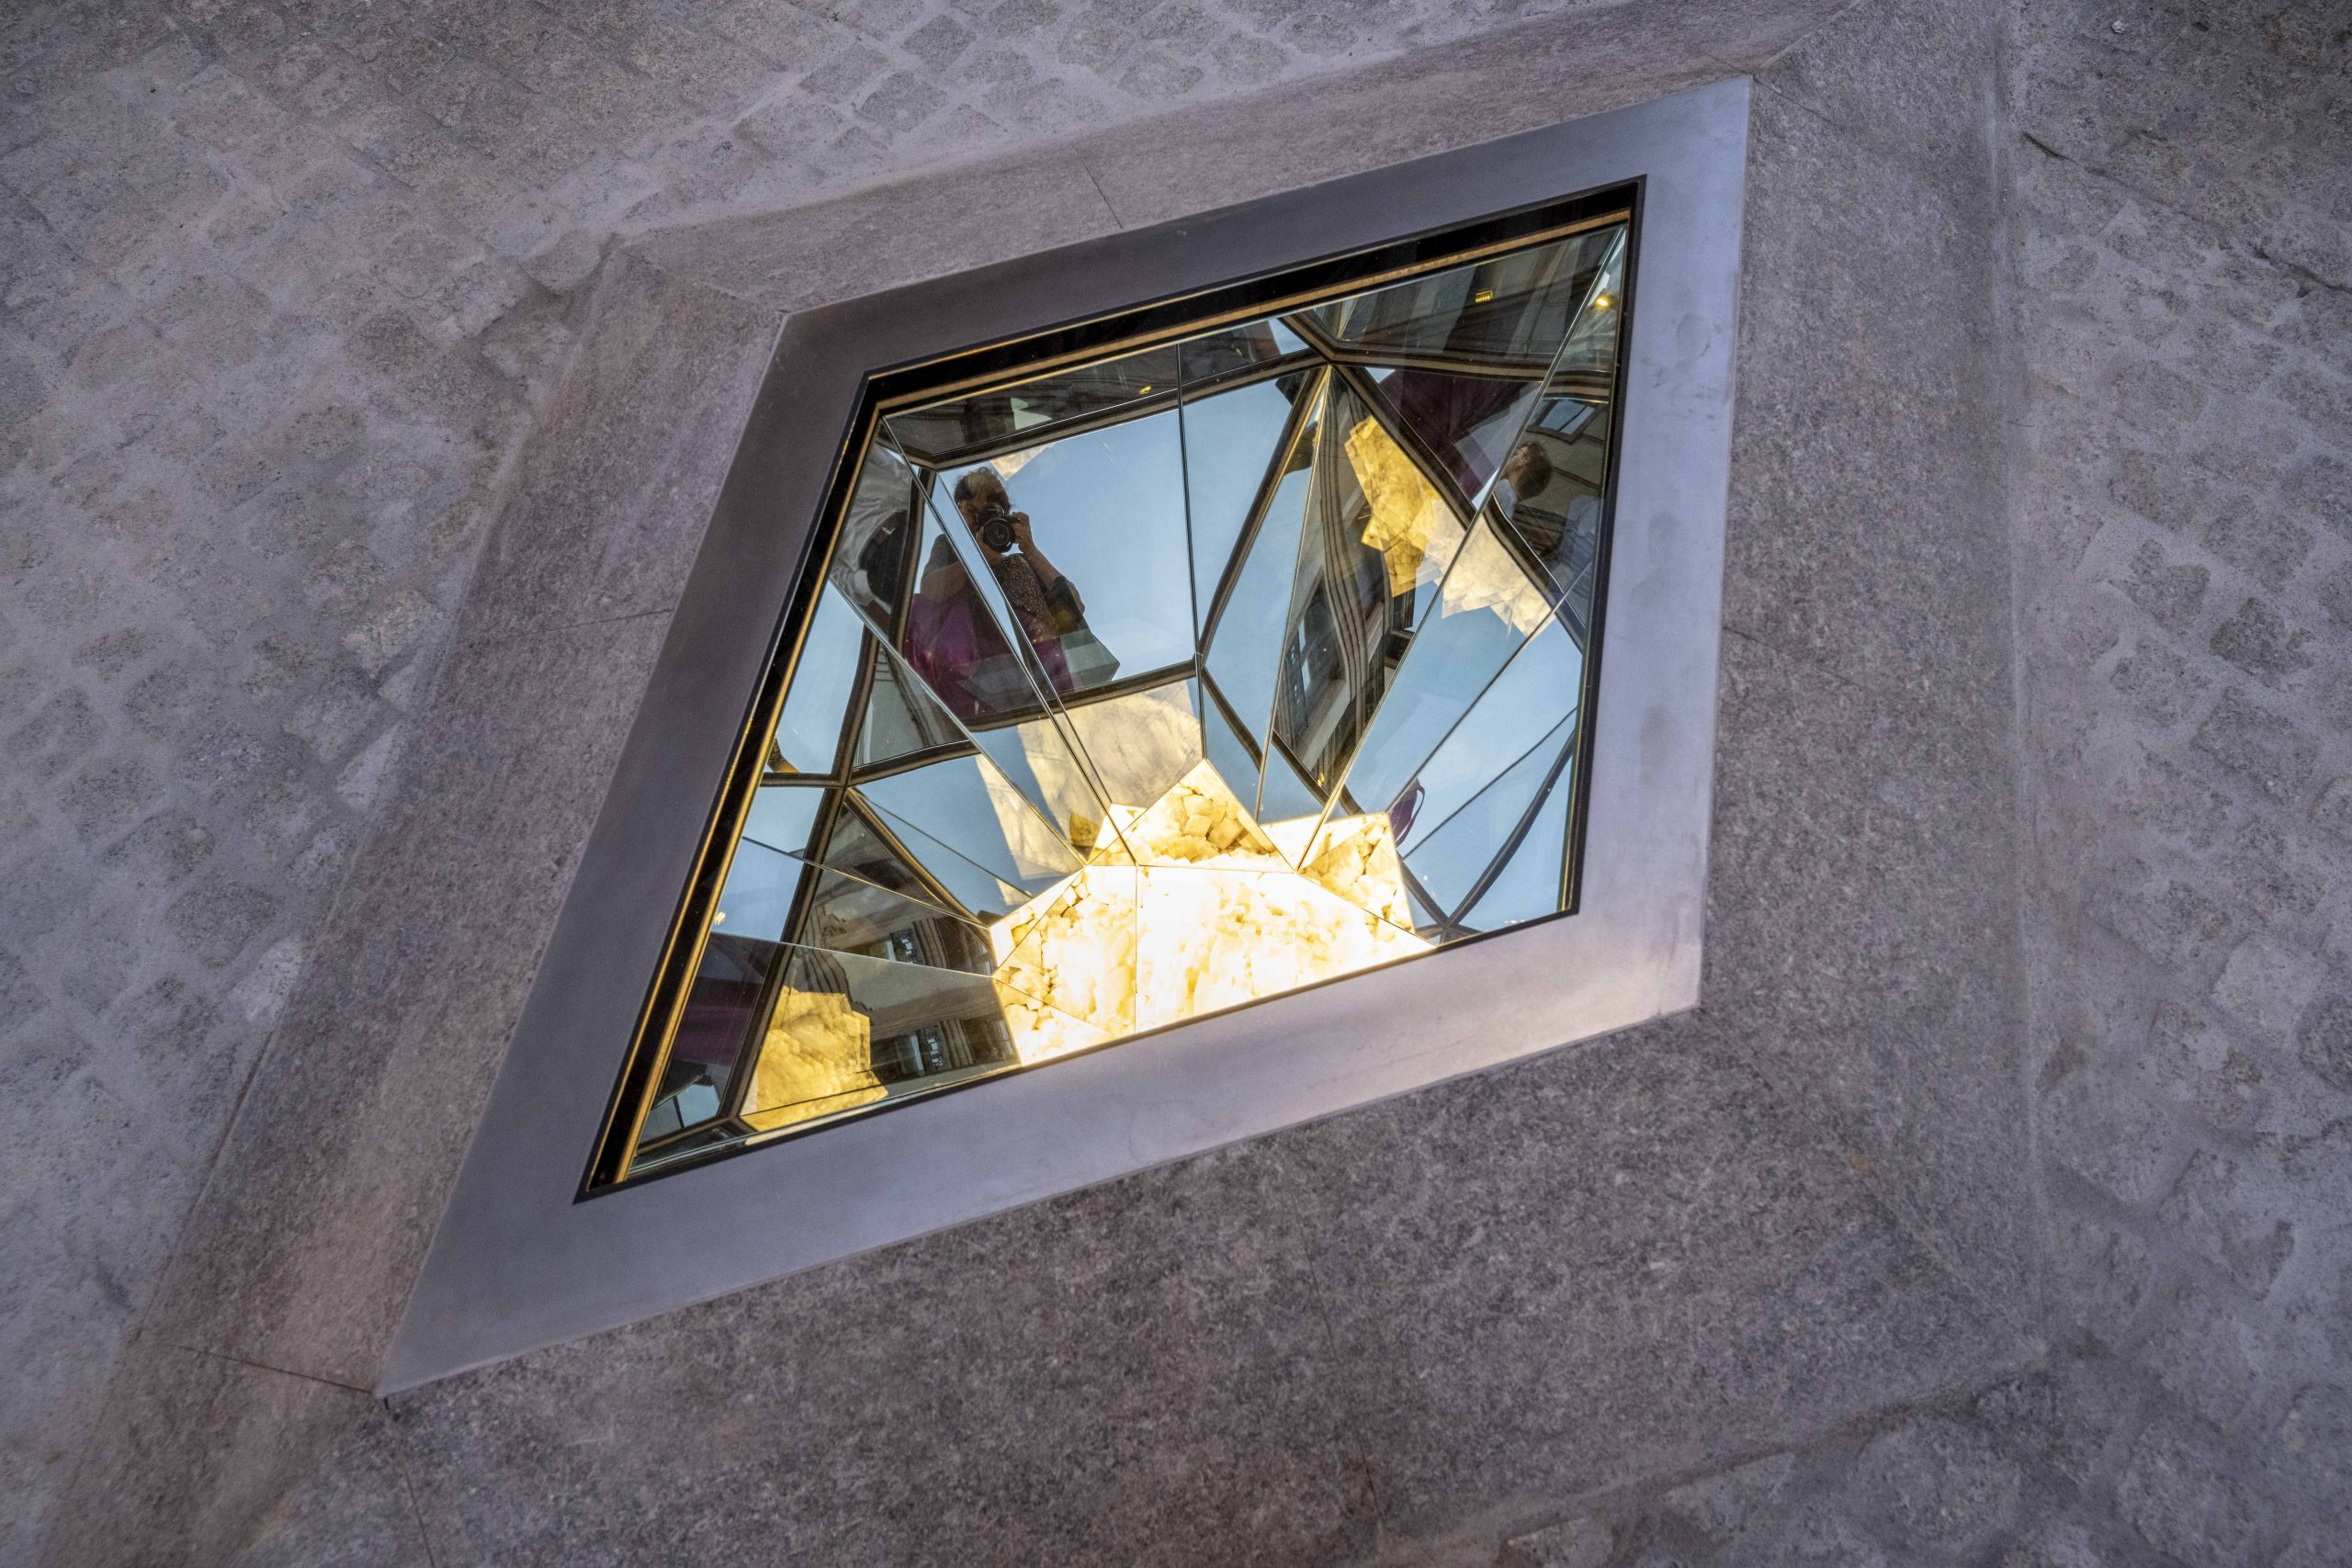 La nuova installazione permanente di Olafur Eliasson al Museo Guggenheim Bilbao